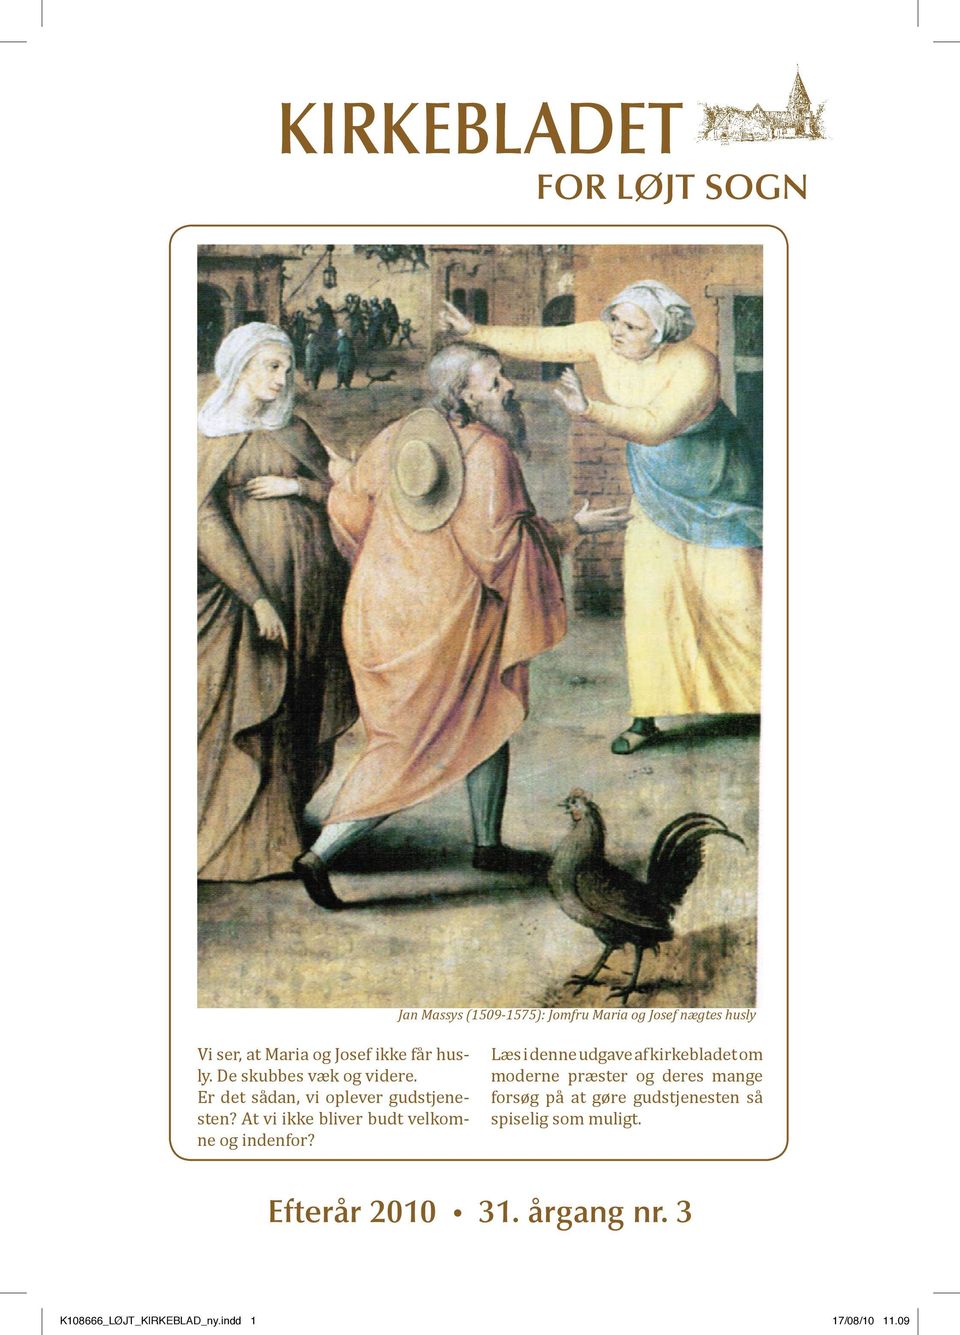 Jan Massys (1509-1575): Jomfru Maria og Josef nægtes husly Læs i denne udgave af kirkebladet om moderne